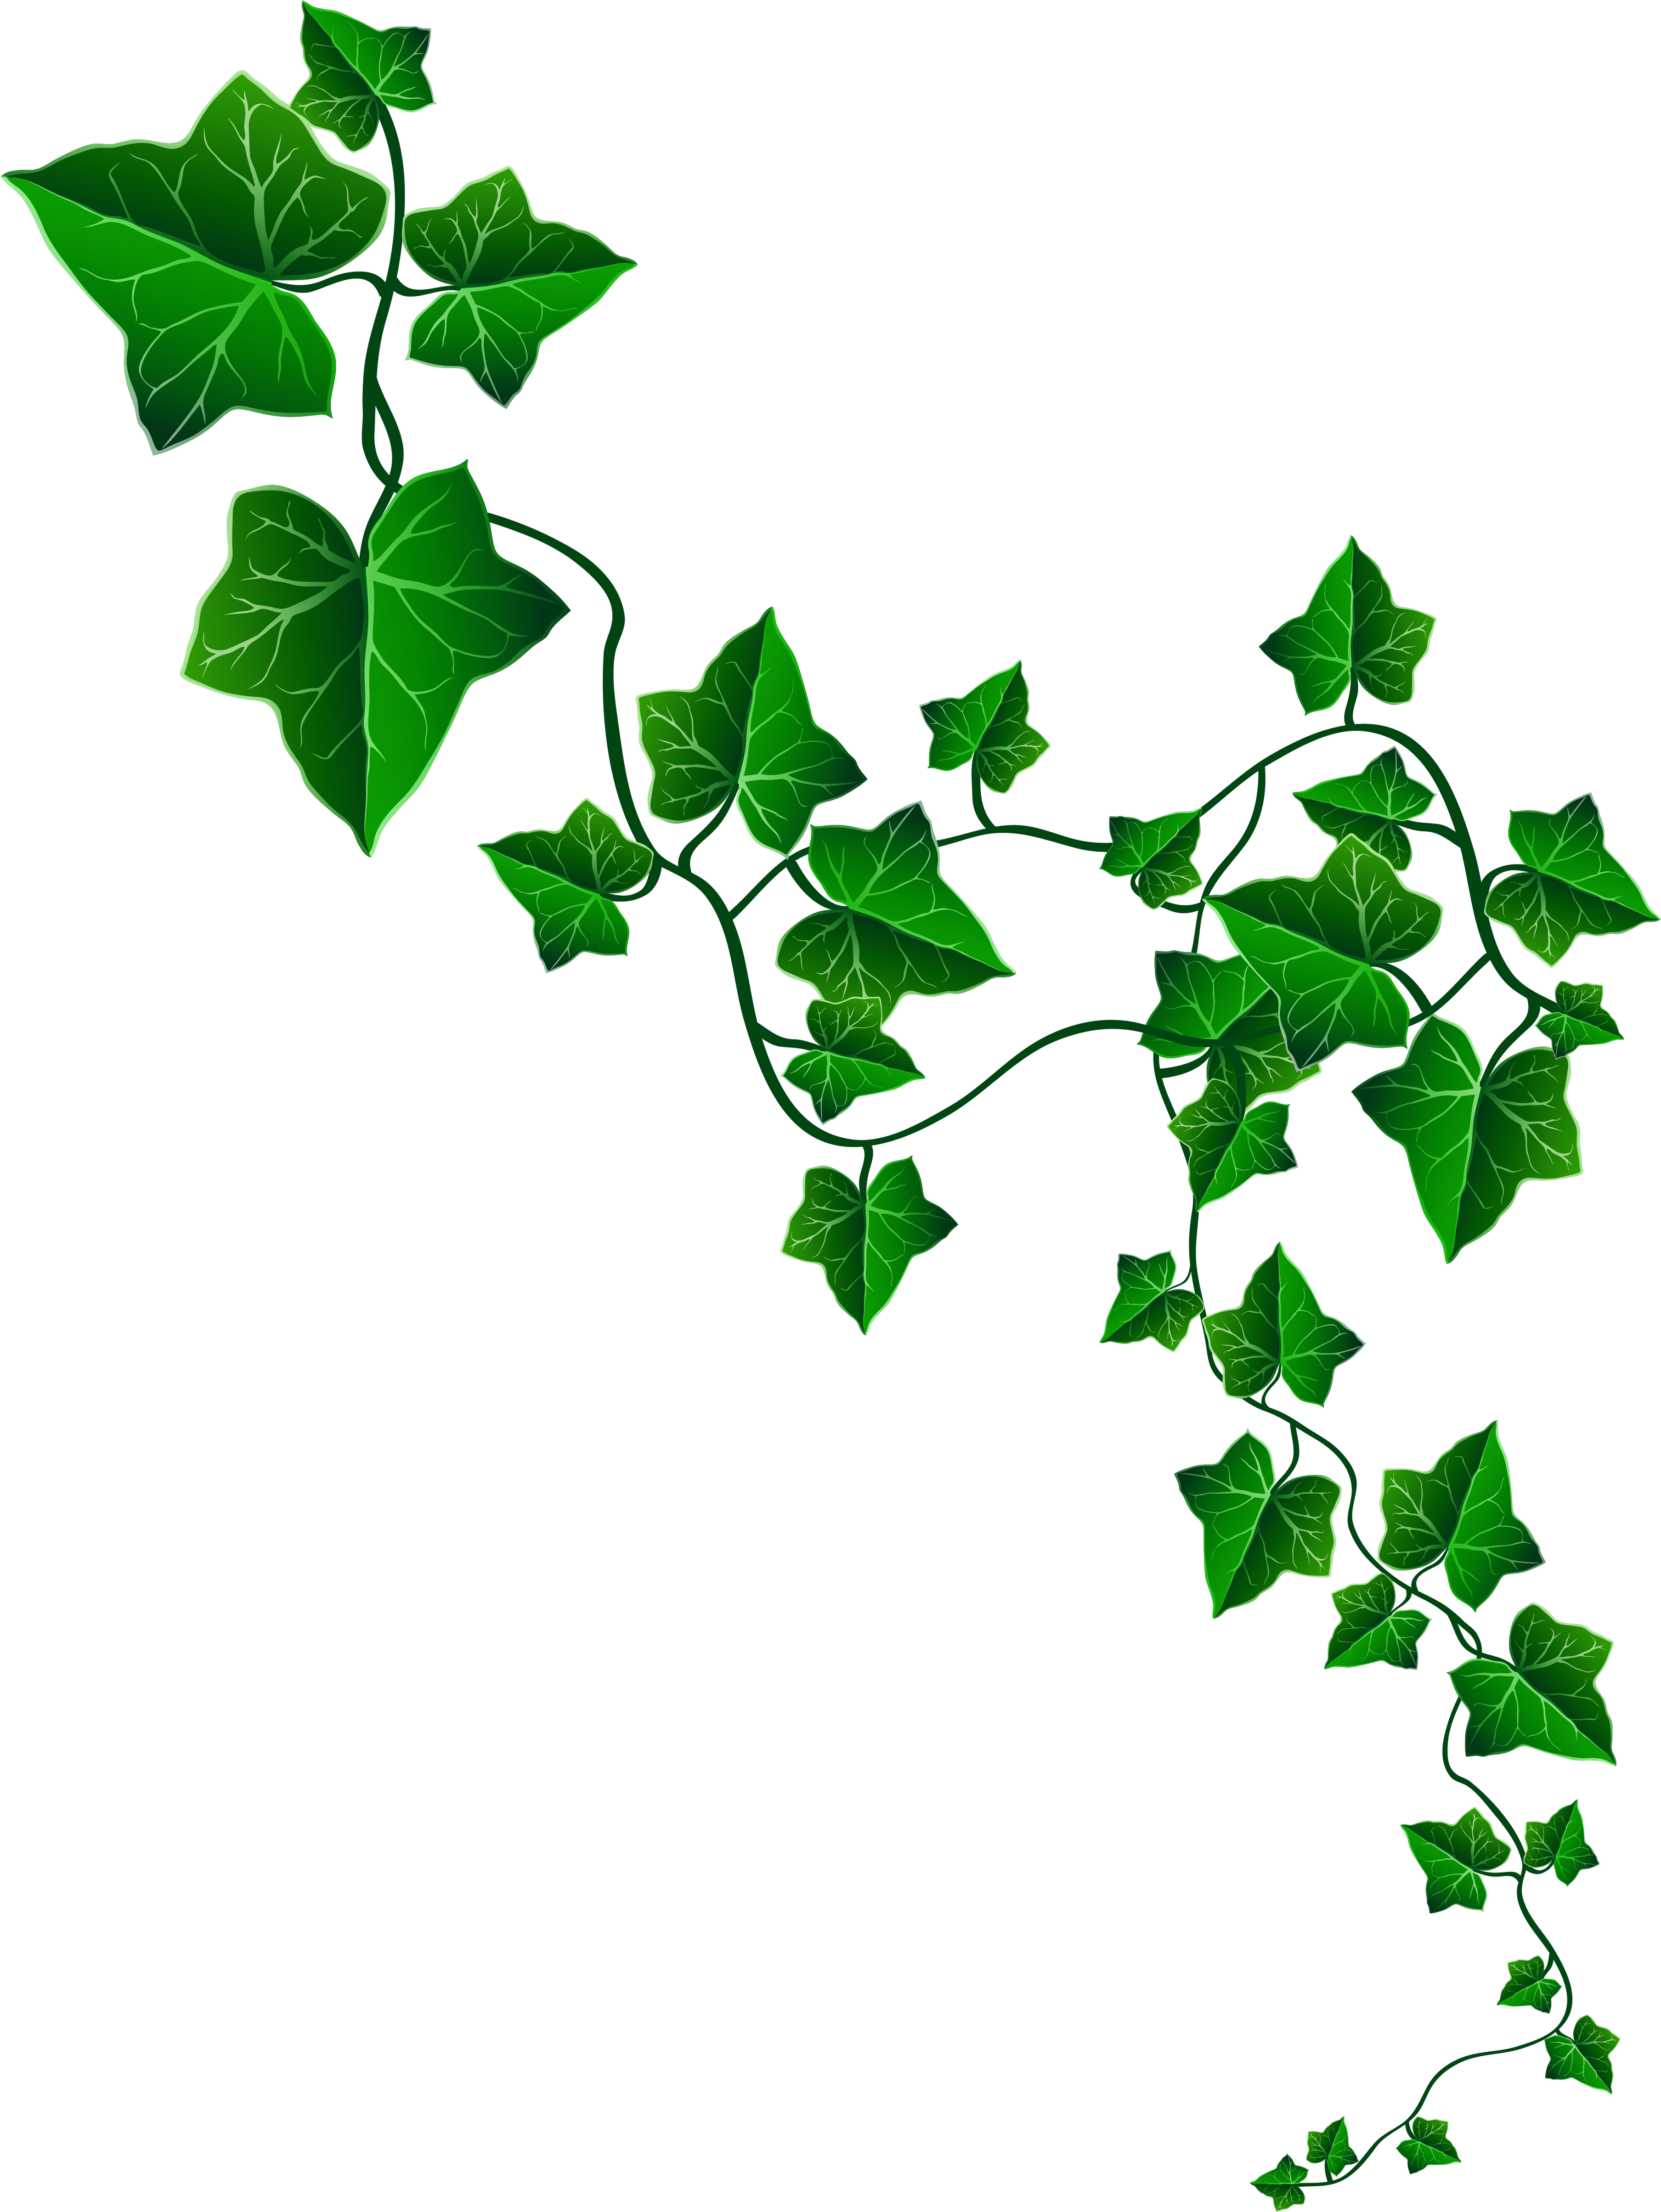 poison ivy. ivy black and white. ivy border. vine black and white. vine. gr...